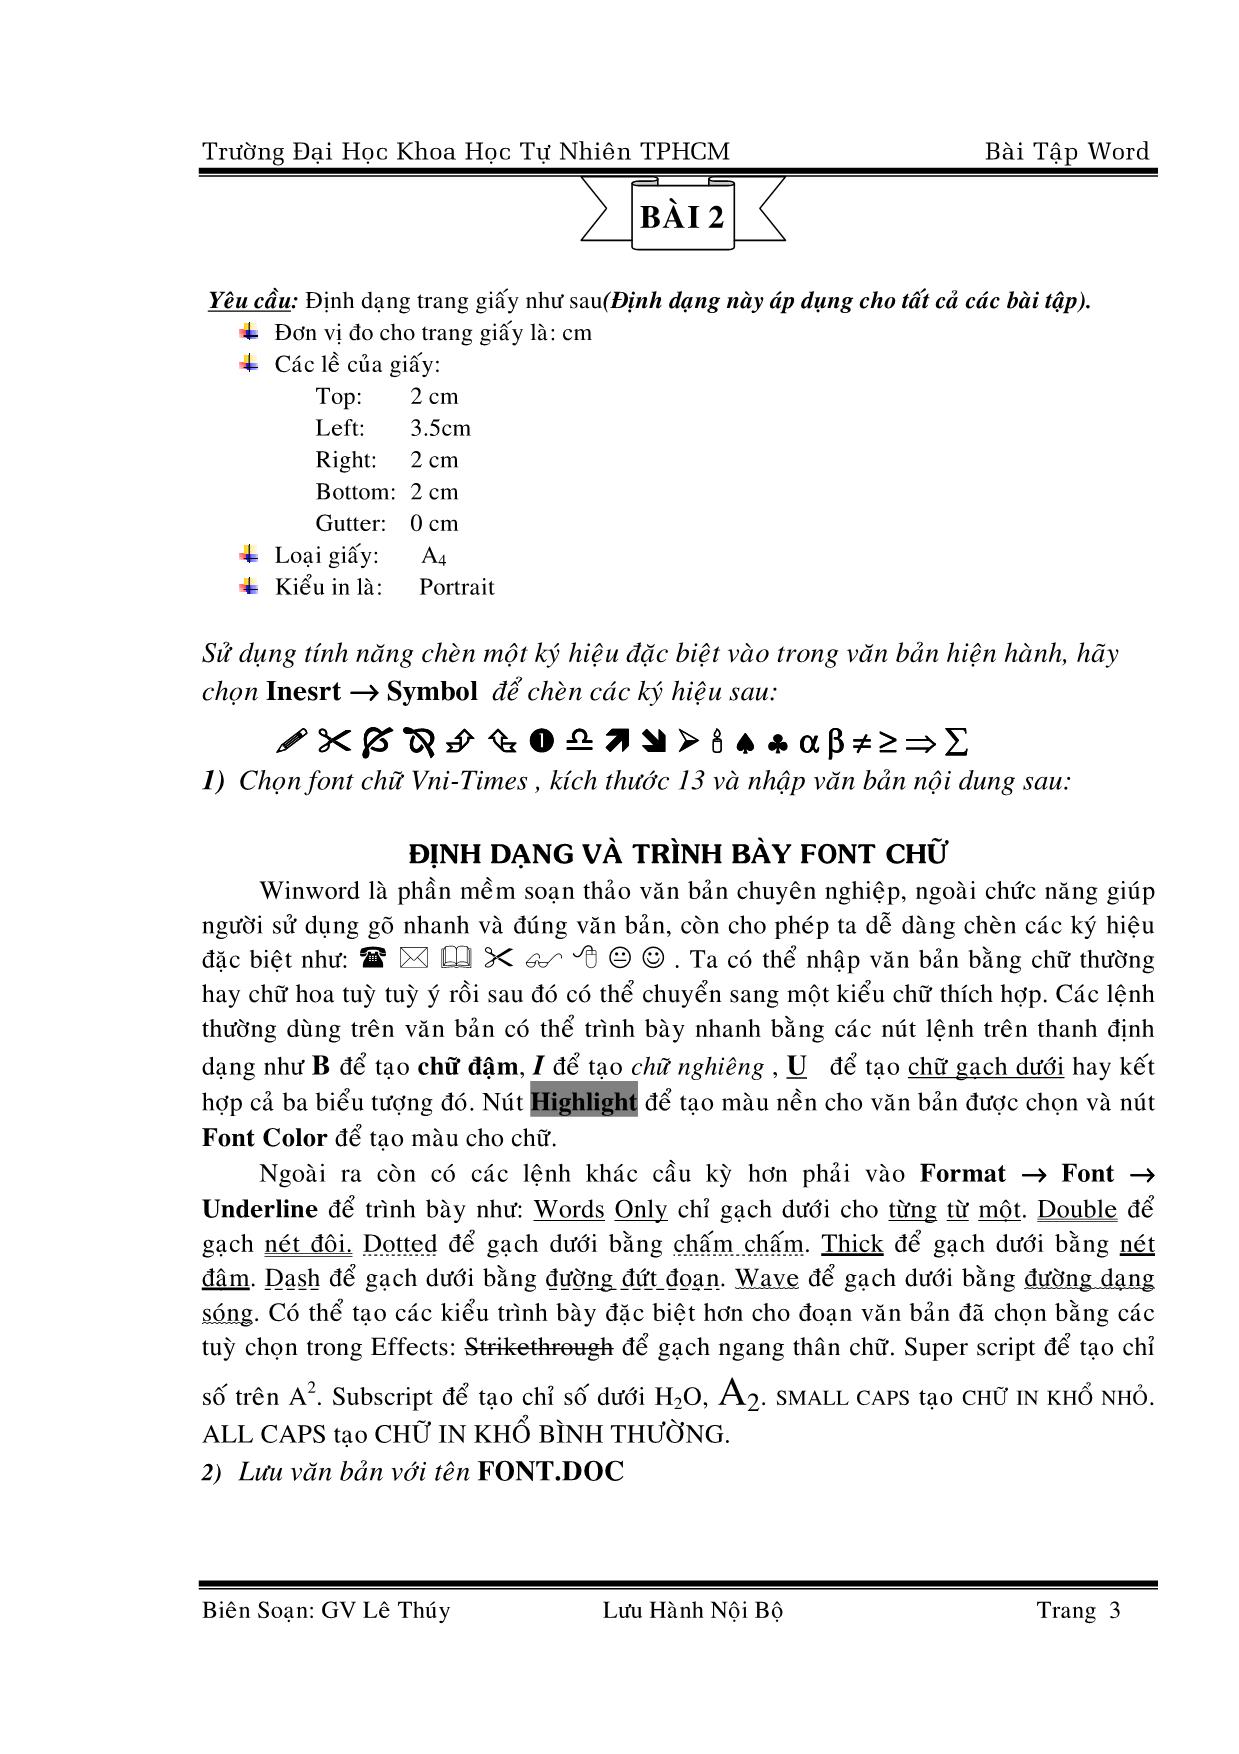 Bài tập word trang 3